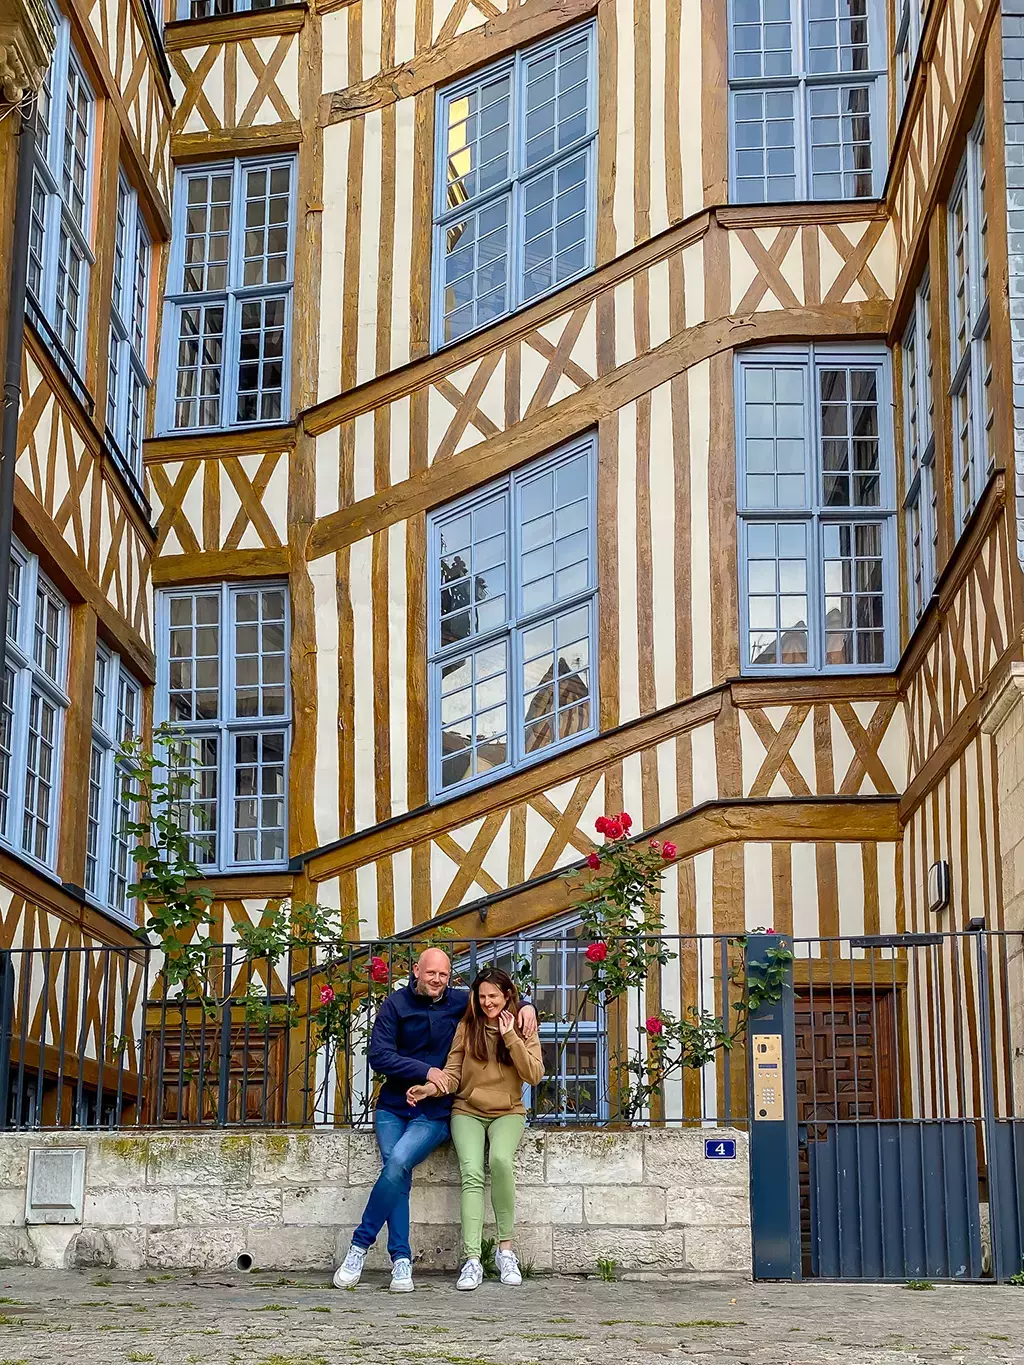 Visiter Rouen à pied en 2 jours : que voir et que faire ?